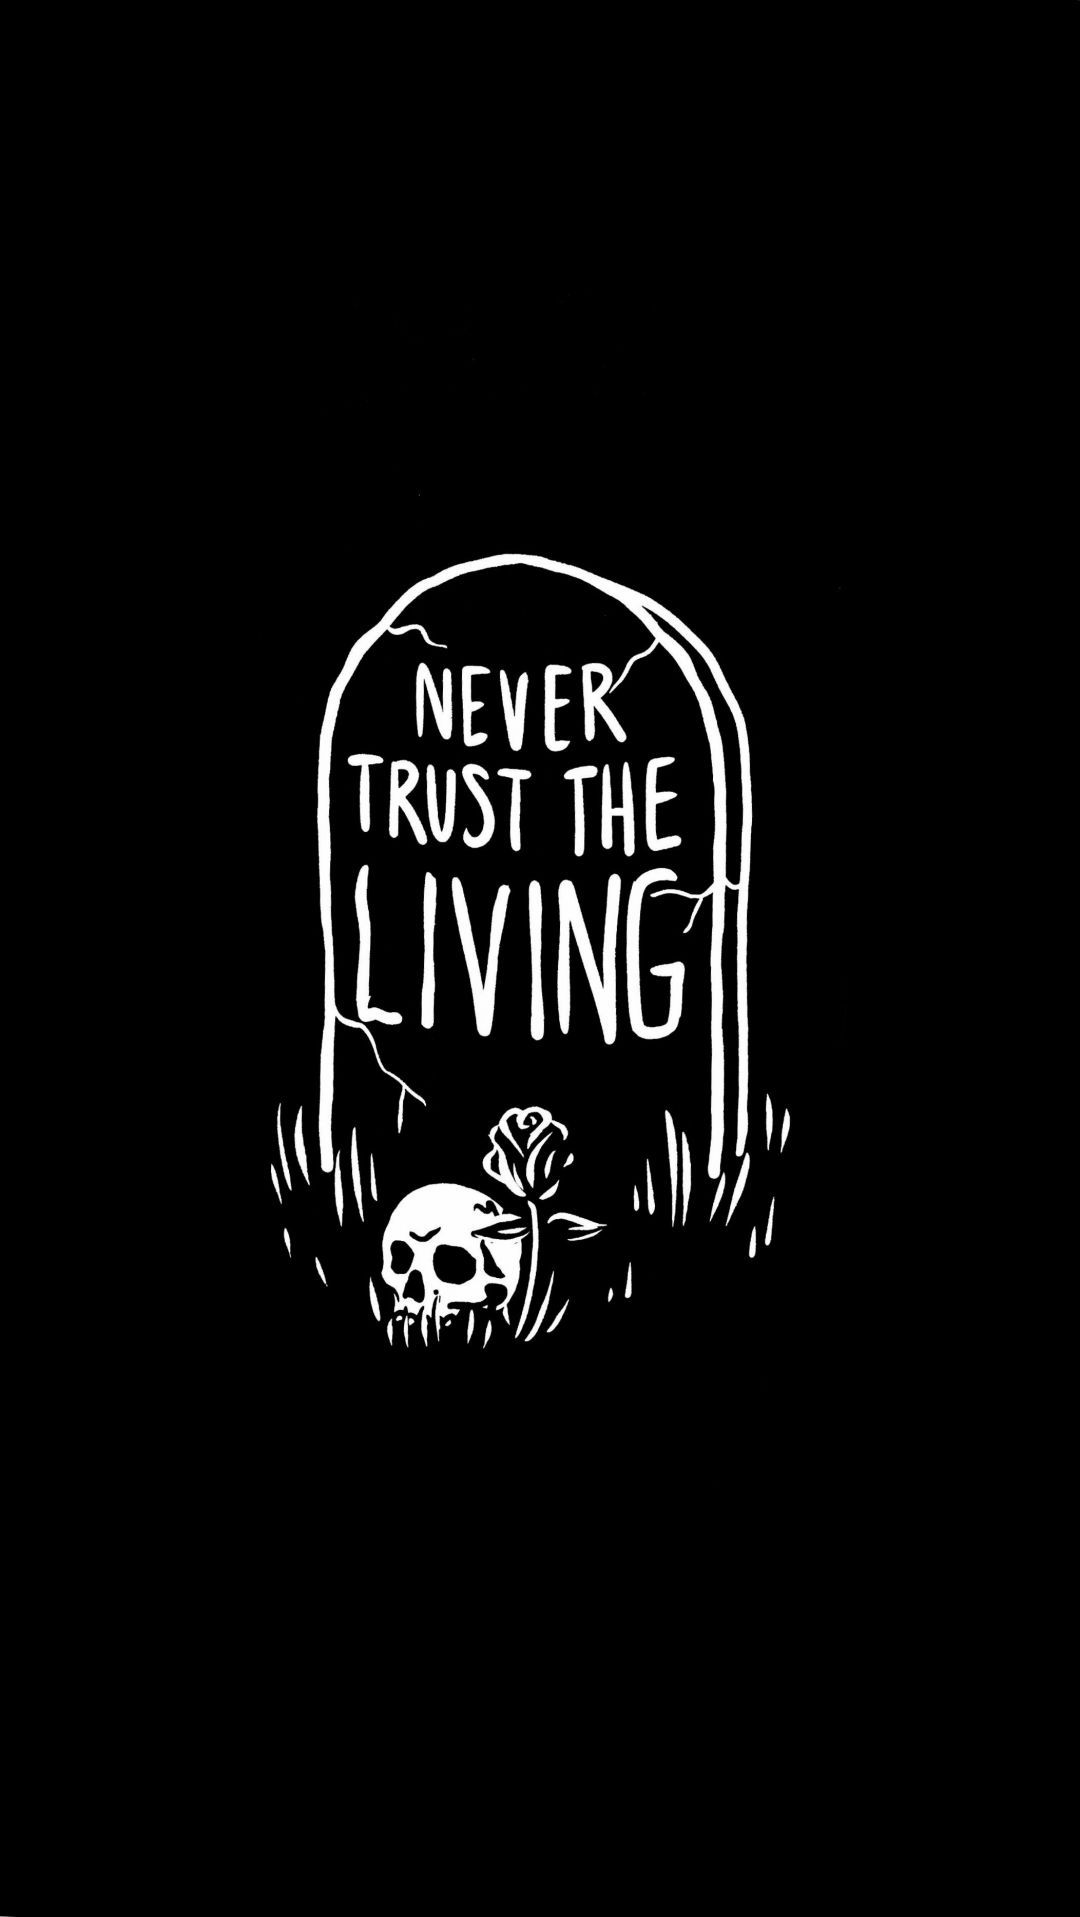 Never trust the living - Skeleton, skull